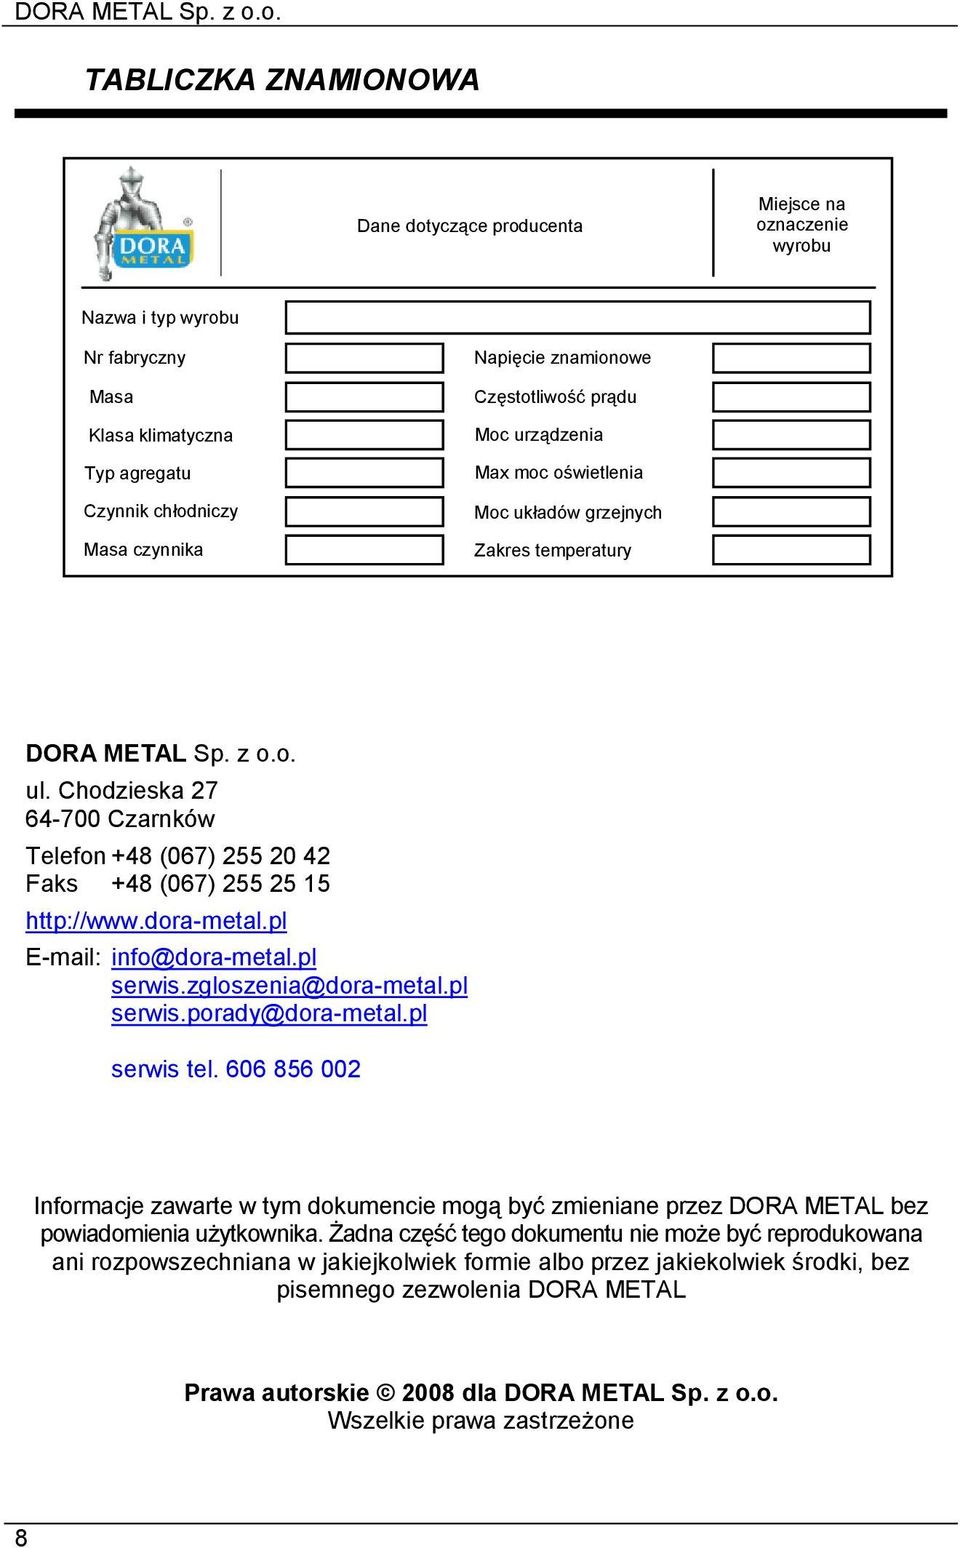 Chodzieska 27 64-700 Czarnków Telefon +48 (067) 255 20 42 Faks +48 (067) 255 25 15 http://www.dora-metal.pl E-mail: info@dora-metal.pl serwis.zgloszenia@dora-metal.pl serwis.porady@dora-metal.